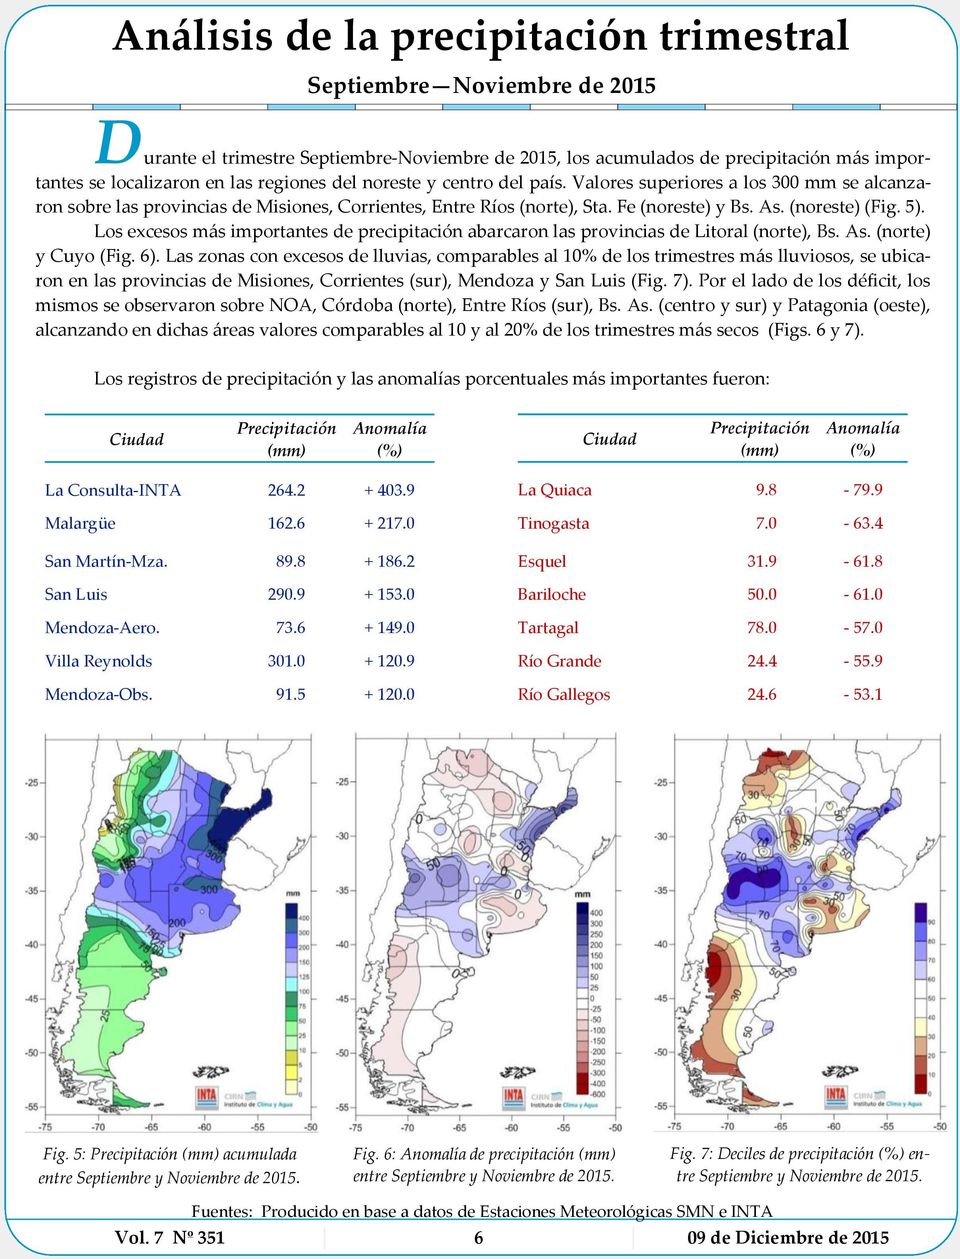 Los excesos más importantes de precipitación abarcaron las provincias de Litoral (norte), Bs. As. (norte) y Cuyo (Fig. 6).